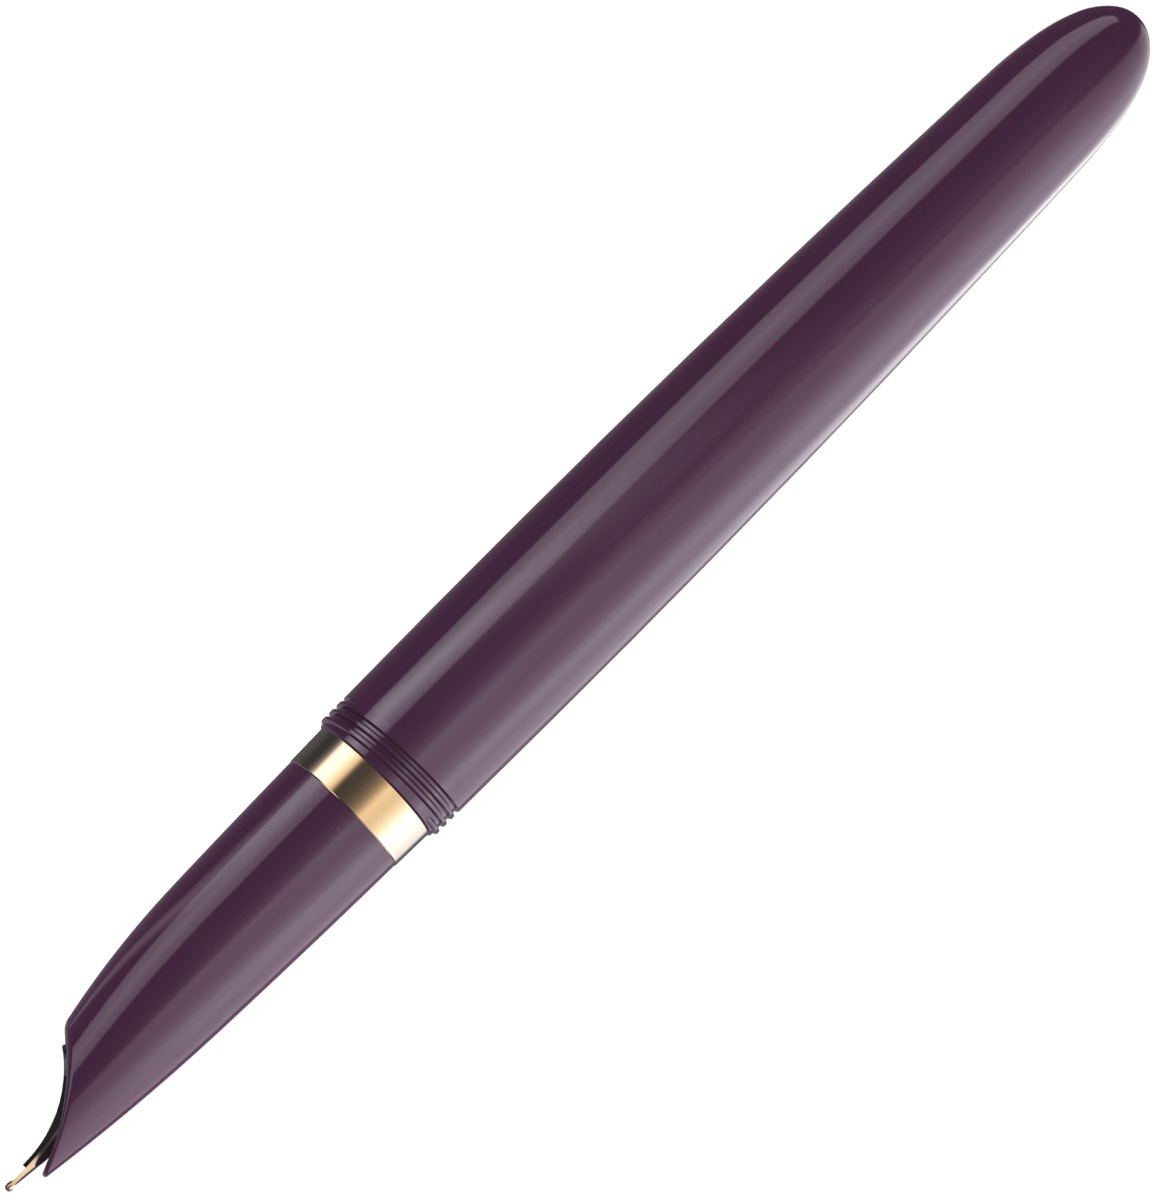  Ручка перьевая Parker 51 Premium, Plum GT (Перо F), фото 5